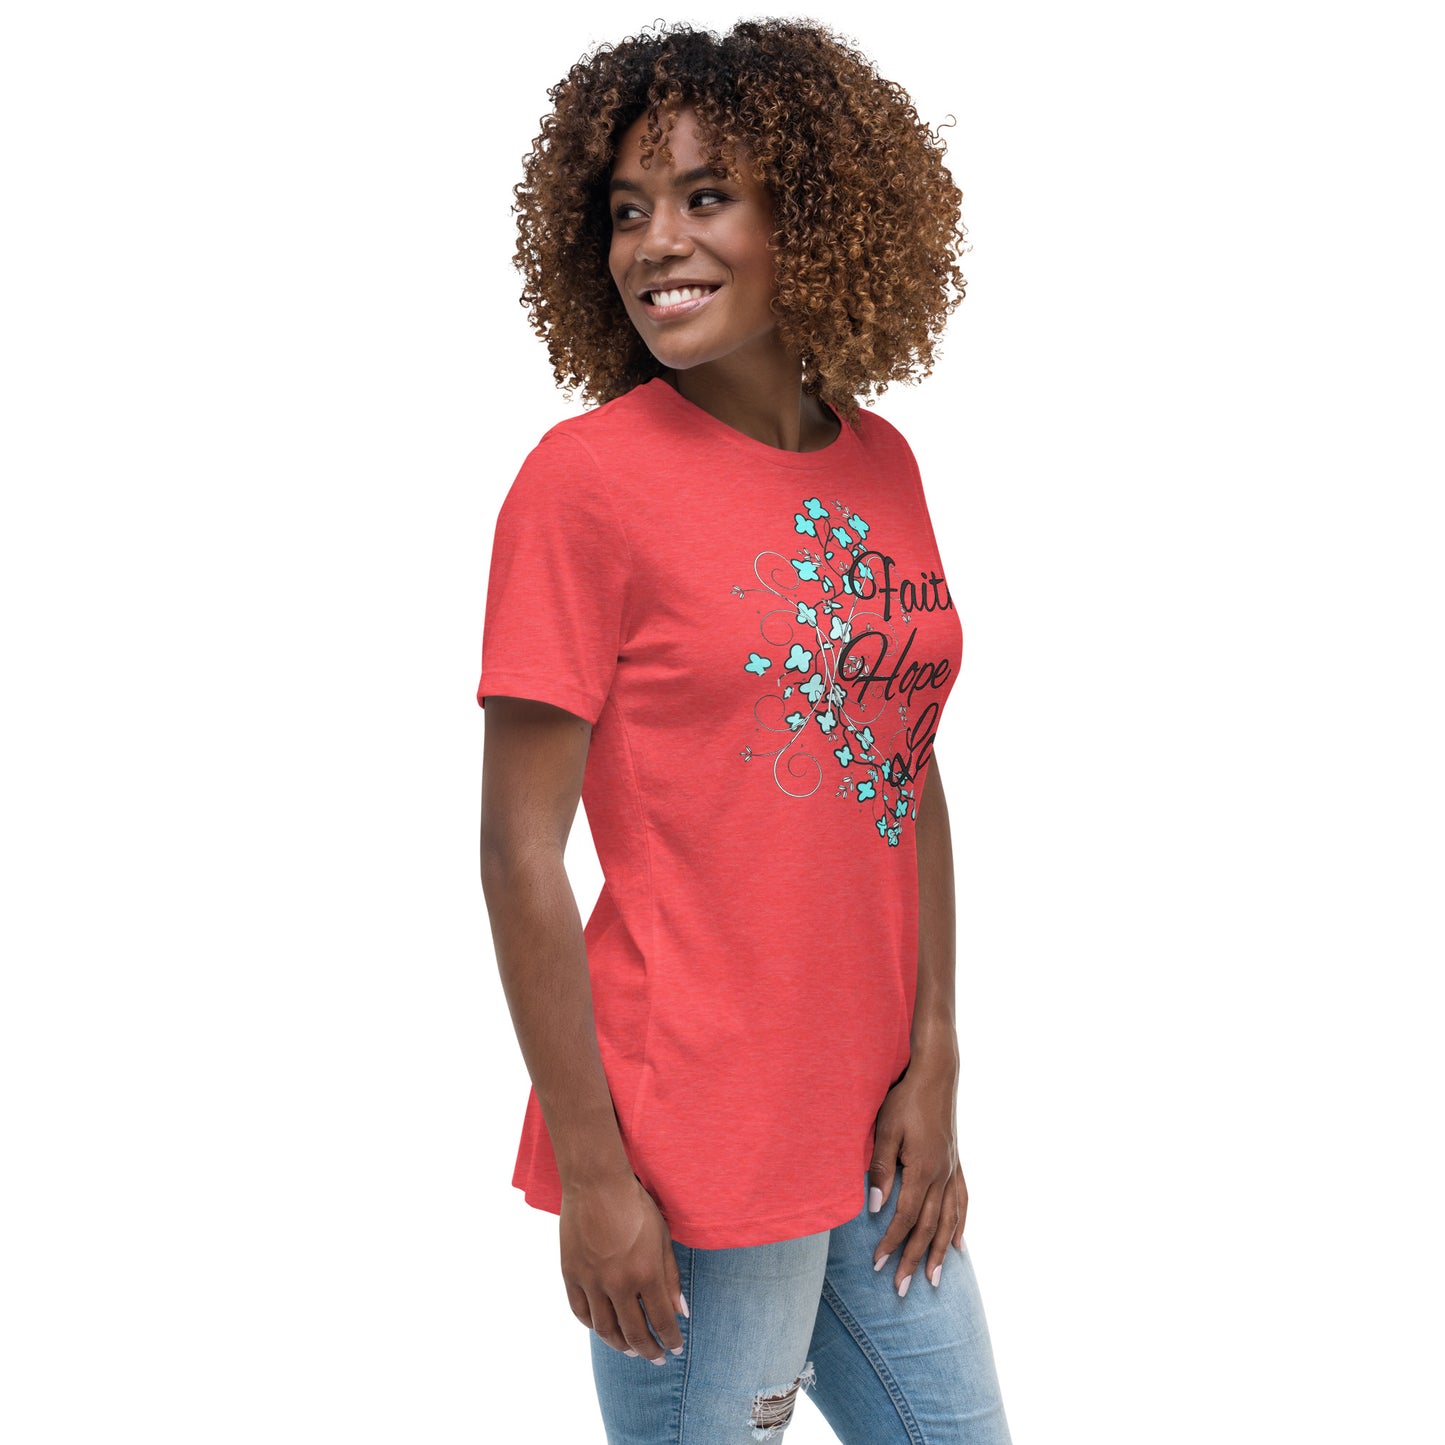 Women's Relaxed T-Shirt FAITH HOPE ADN LOVE